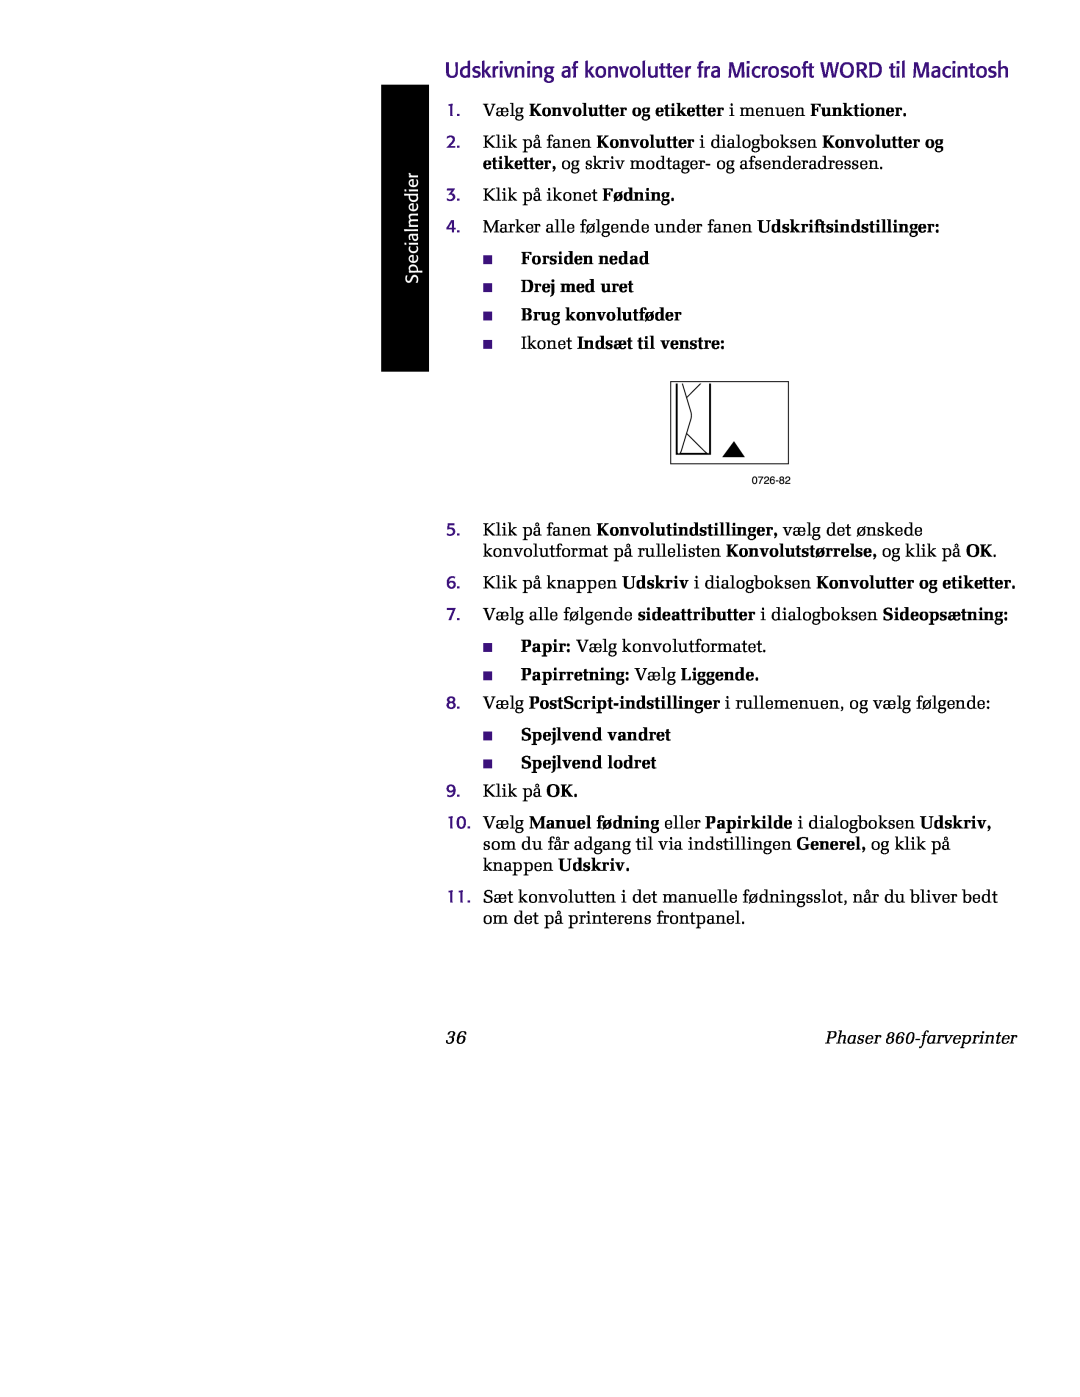 Tektronix 860 Udskrivning af konvolutter fra Microsoft WORD til Macintosh, Forsiden nedad Drej med uret Brug konvolutføder 